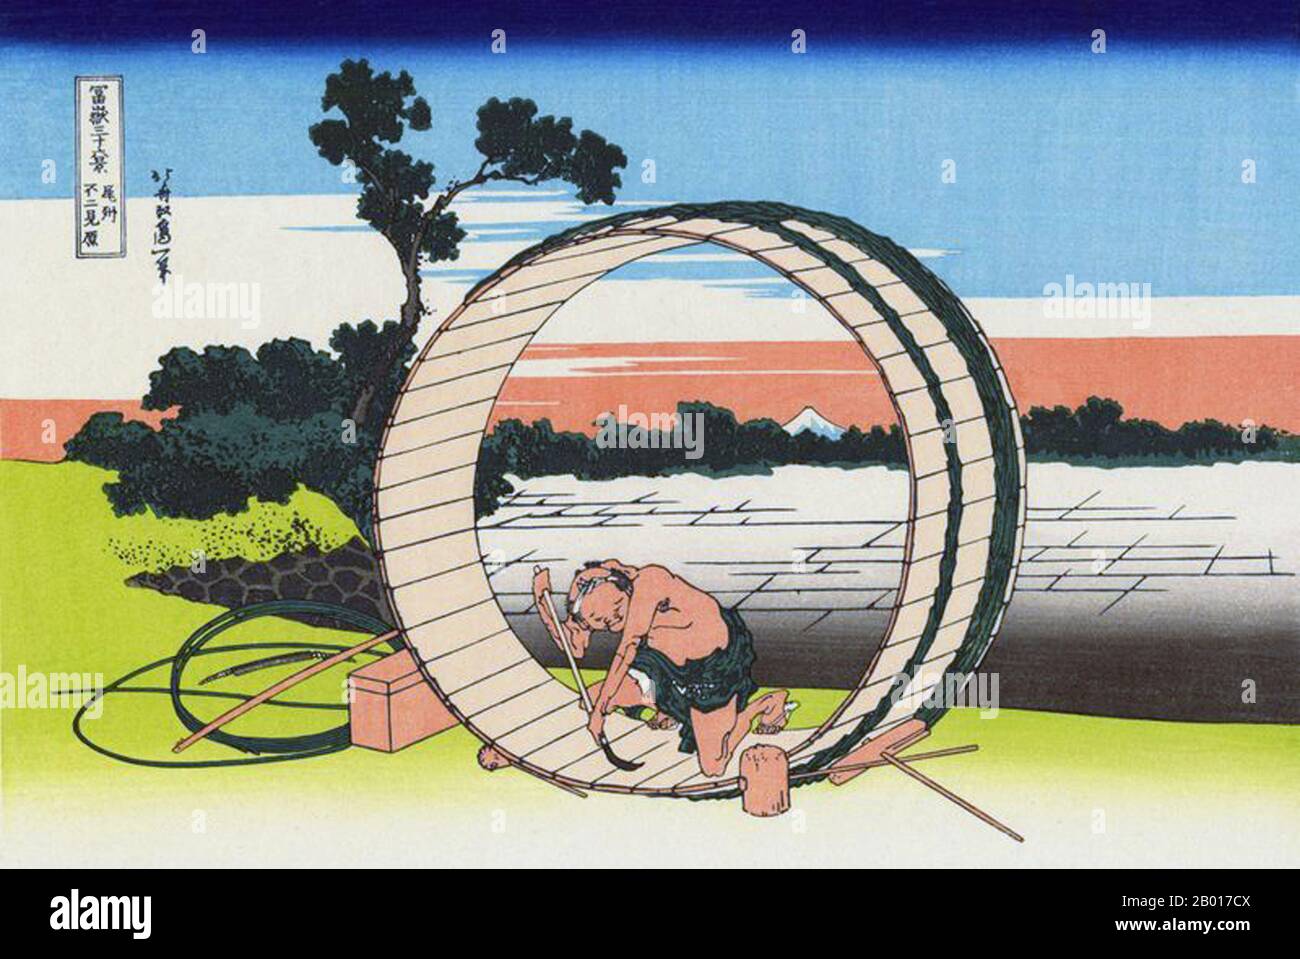 Japan: ‘Fujimigahara in der Provinz Owari’. Ukiyo-e Holzschnitt aus der Serie ‘Thirty-Six views of Mount Fuji’ von Katsushika Hokusai (31. Oktober 1760 - 10. Mai 1849), 1830. ‘Thirty-Six Views of Mount Fuji’ ist eine Serie von Holzschnitten der japanischen Künstlerin Katsushika Hokusai, die „Sukiyo-e“ ‘. Die Serie zeigt den Fuji in unterschiedlichen Jahreszeiten und Wetterbedingungen an verschiedenen Orten und Entfernungen. Es besteht tatsächlich aus 46 Drucken, die zwischen 1826 und 1833 entstanden sind. Die ersten 36 wurden in die ursprüngliche Publikation aufgenommen und aufgrund ihrer Popularität kamen 10 weitere hinzu. Stockfoto